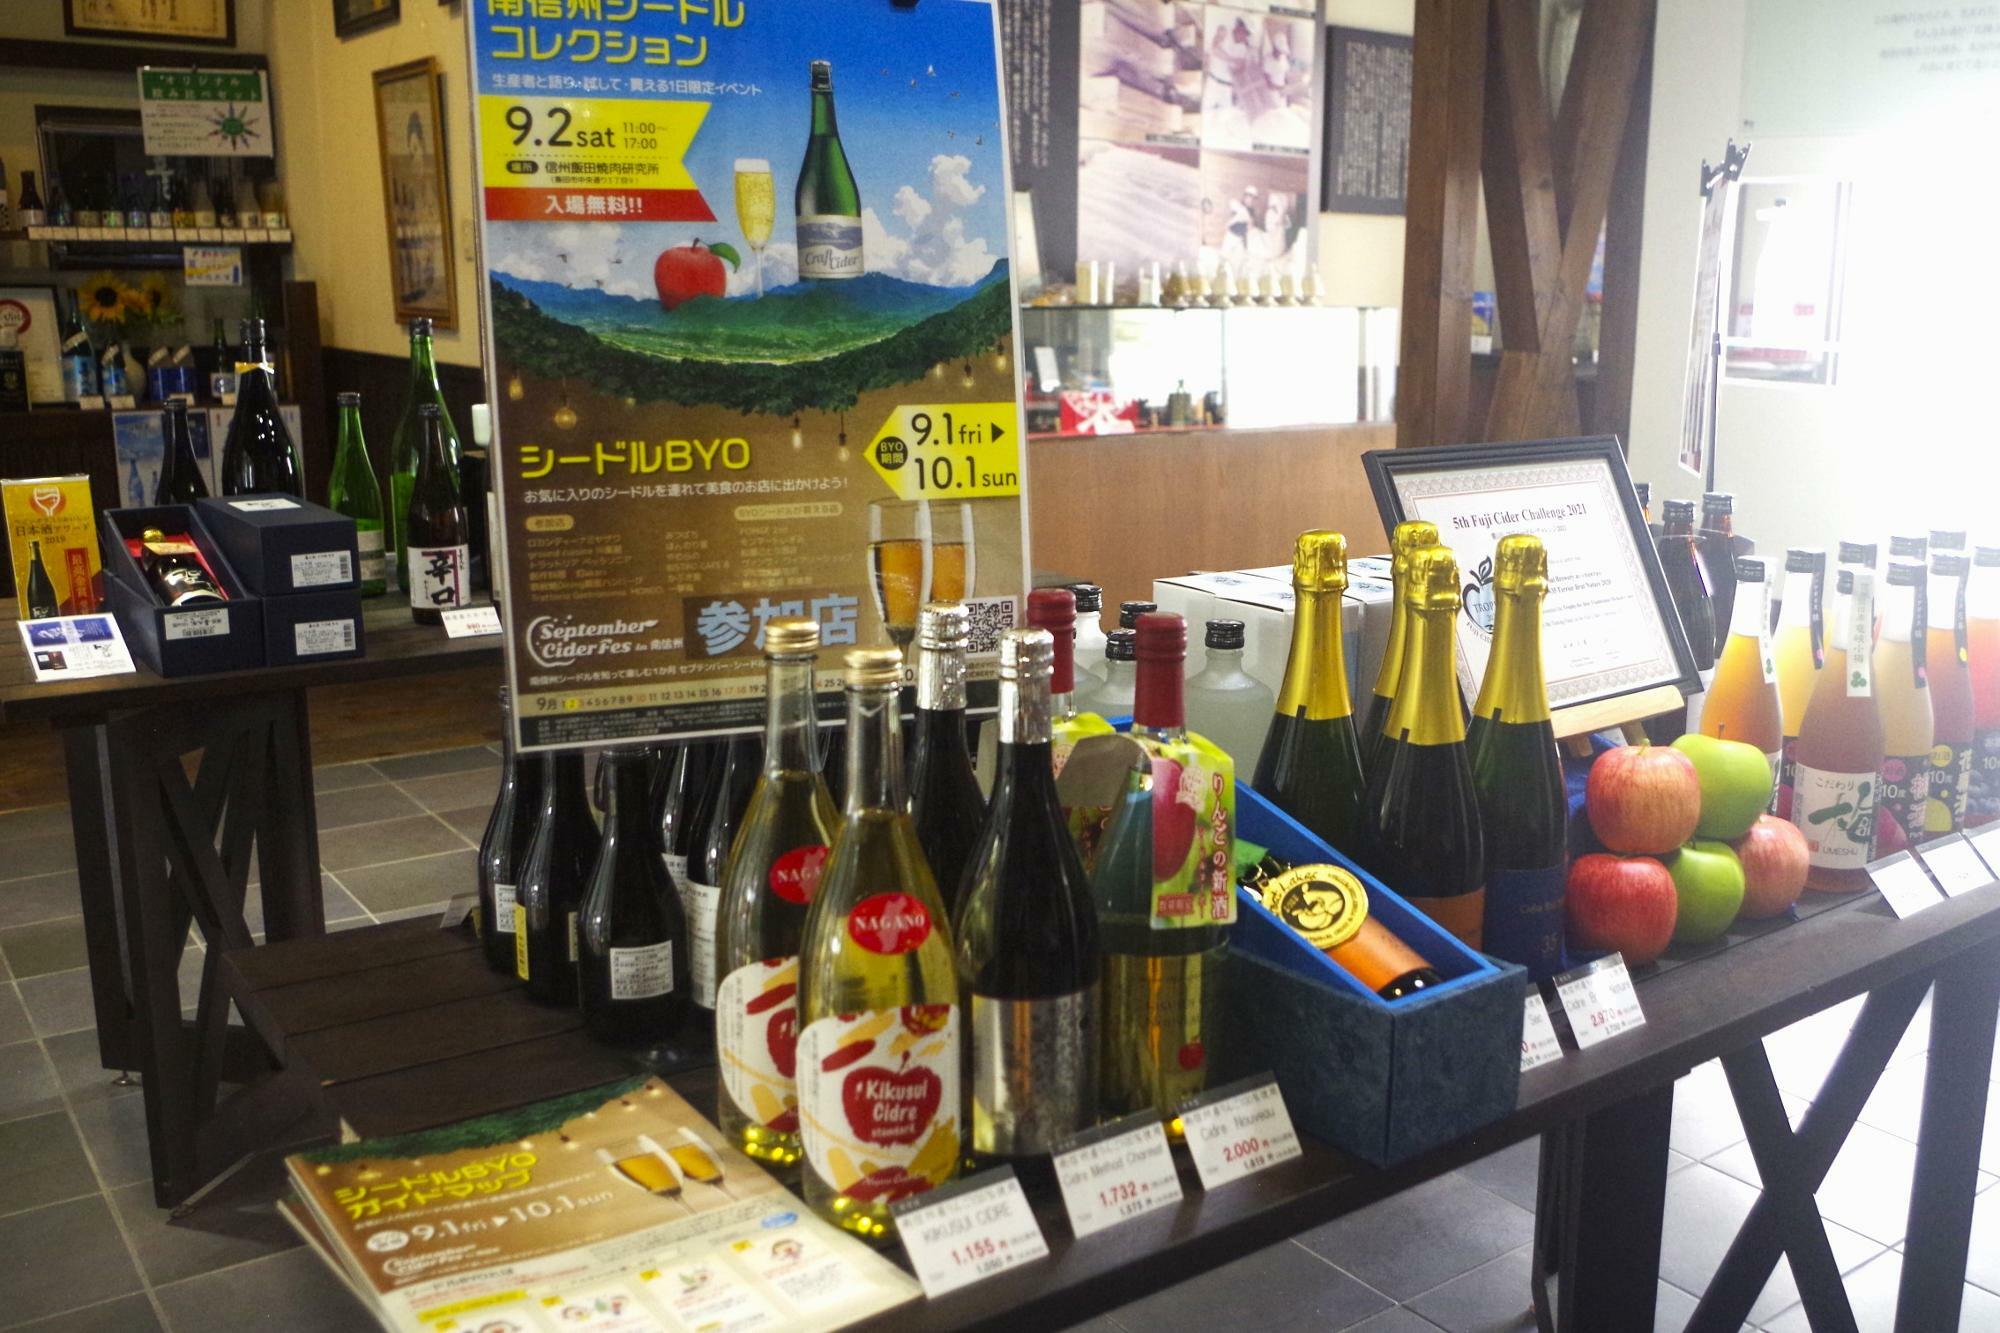 シードルとリキュール類の棚。喜久水酒造は、9月1日～10月1日まで飯田市内で行われているシードルイベント「シードルBYO」参加店でもあります